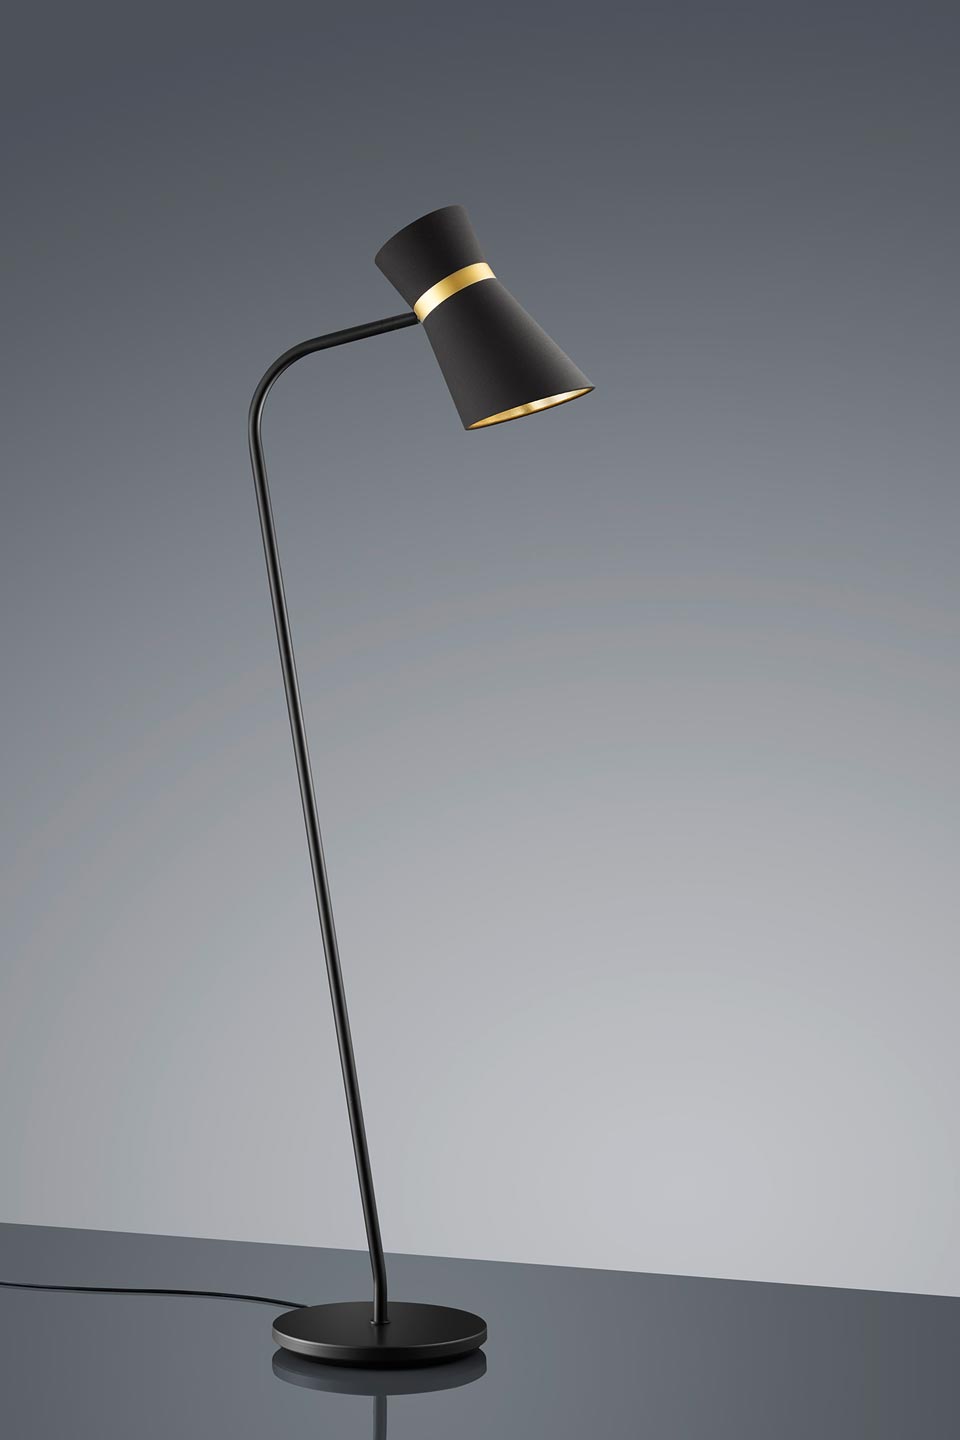 Abat-jour en chintz noir intérieur doré inclinable : Baulmann Leuchten  luminaire de prestige fabriqué en Allemagne - Réf. 16010112 - mobile